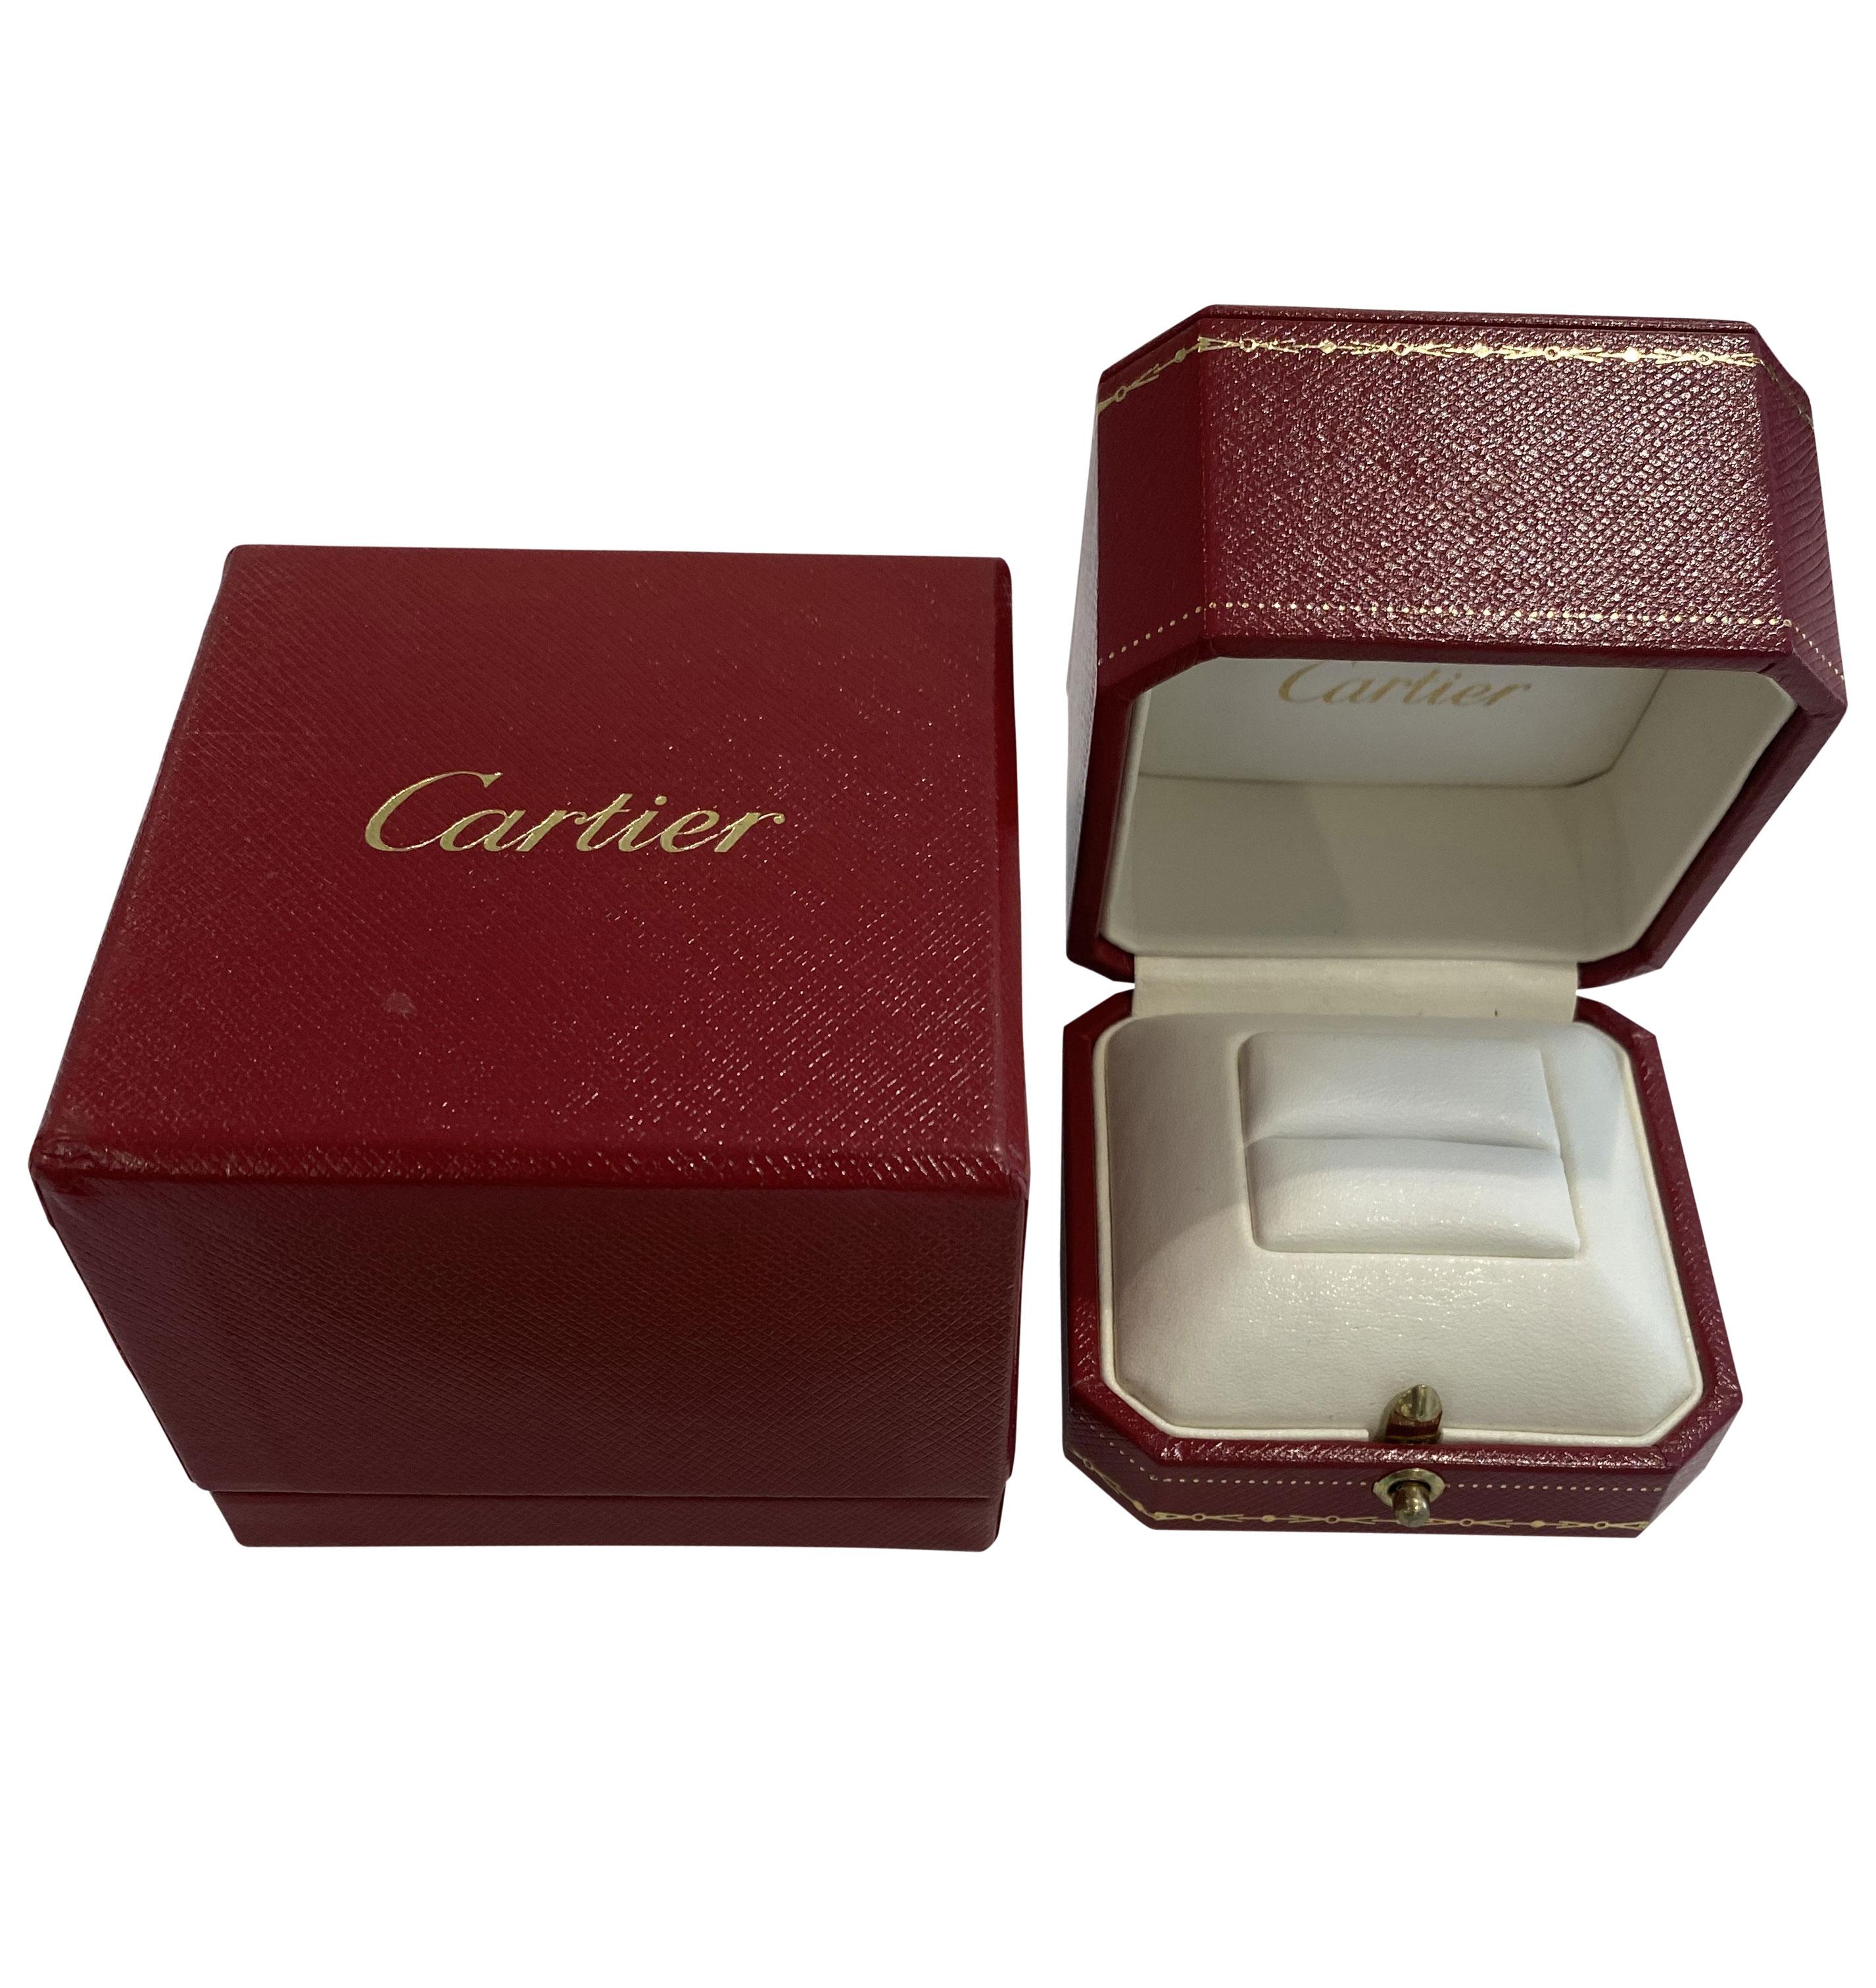 cartier 1895 diamond ring